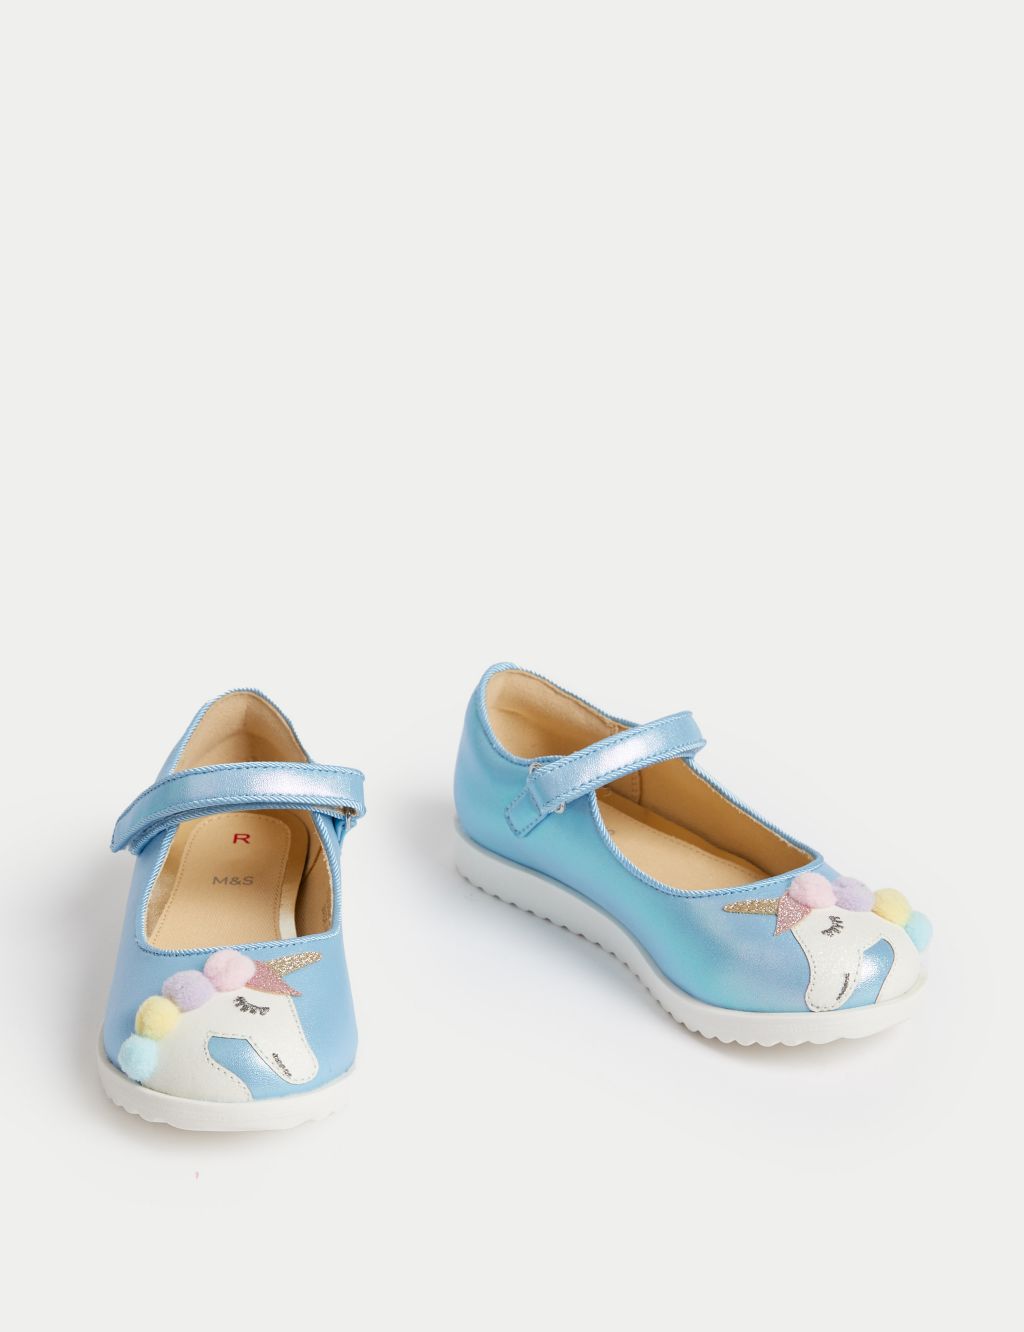 Kids' Riptape Unicorn Mary Jane Shoes (4 Small - 2 Large) image 2